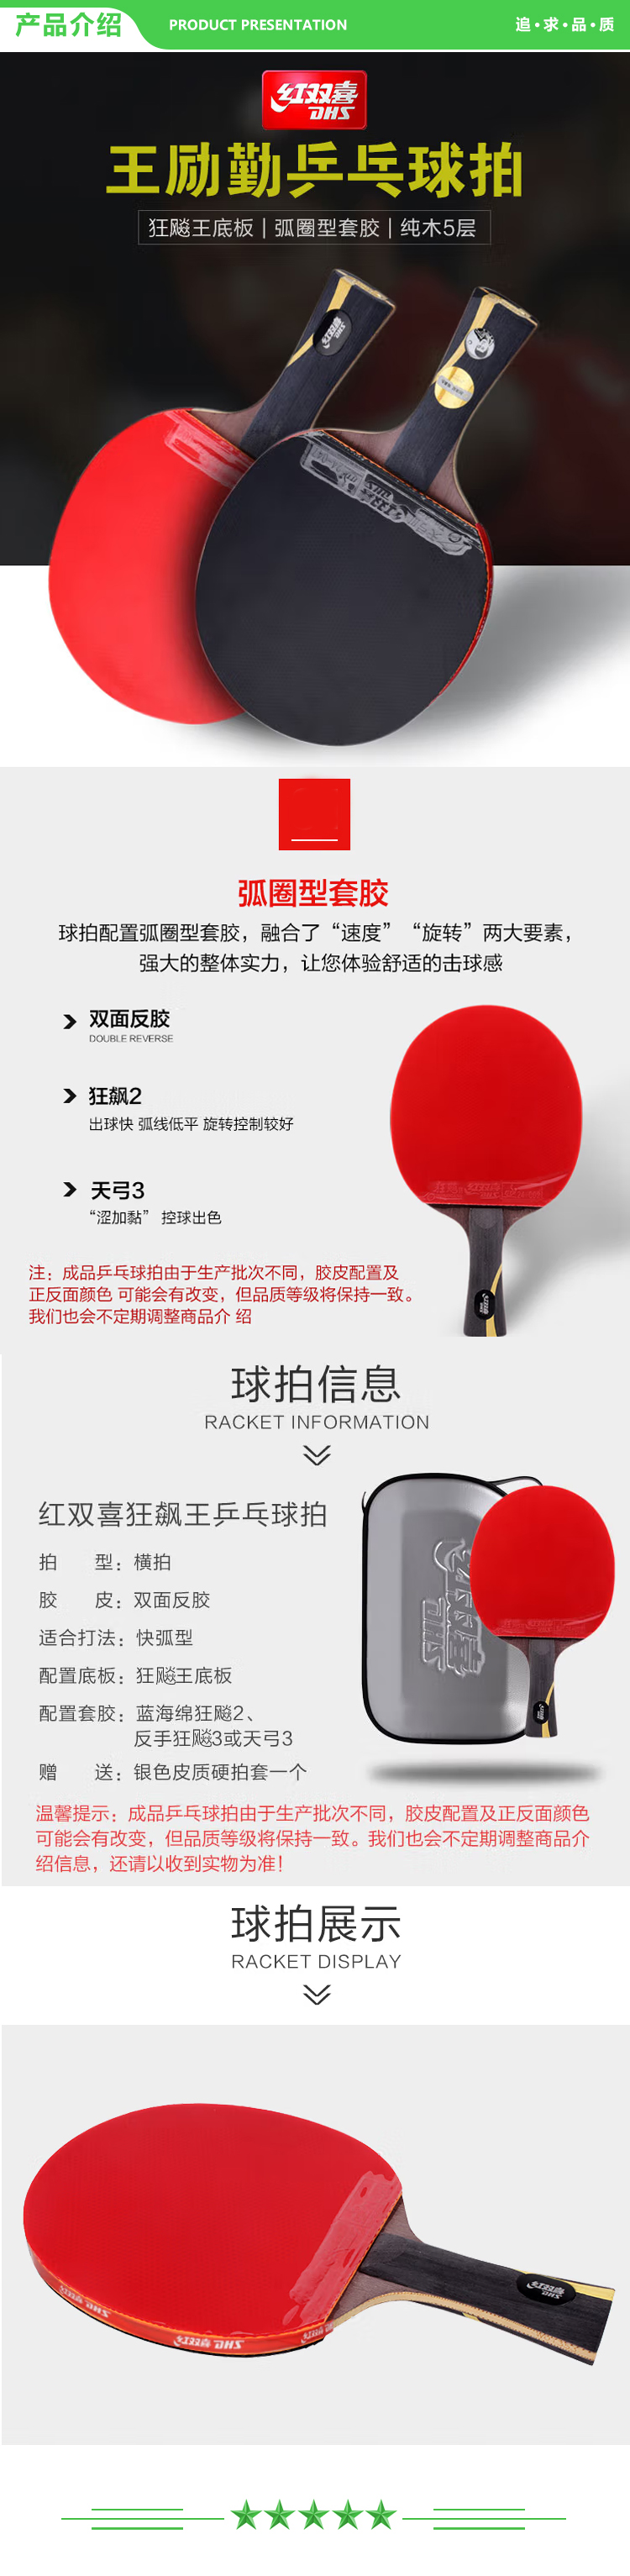 红双喜 DHS WANG-L 乒乓球拍 王励勤礼盒装 双面反胶皮 横拍 长柄 含拍套  2.jpg